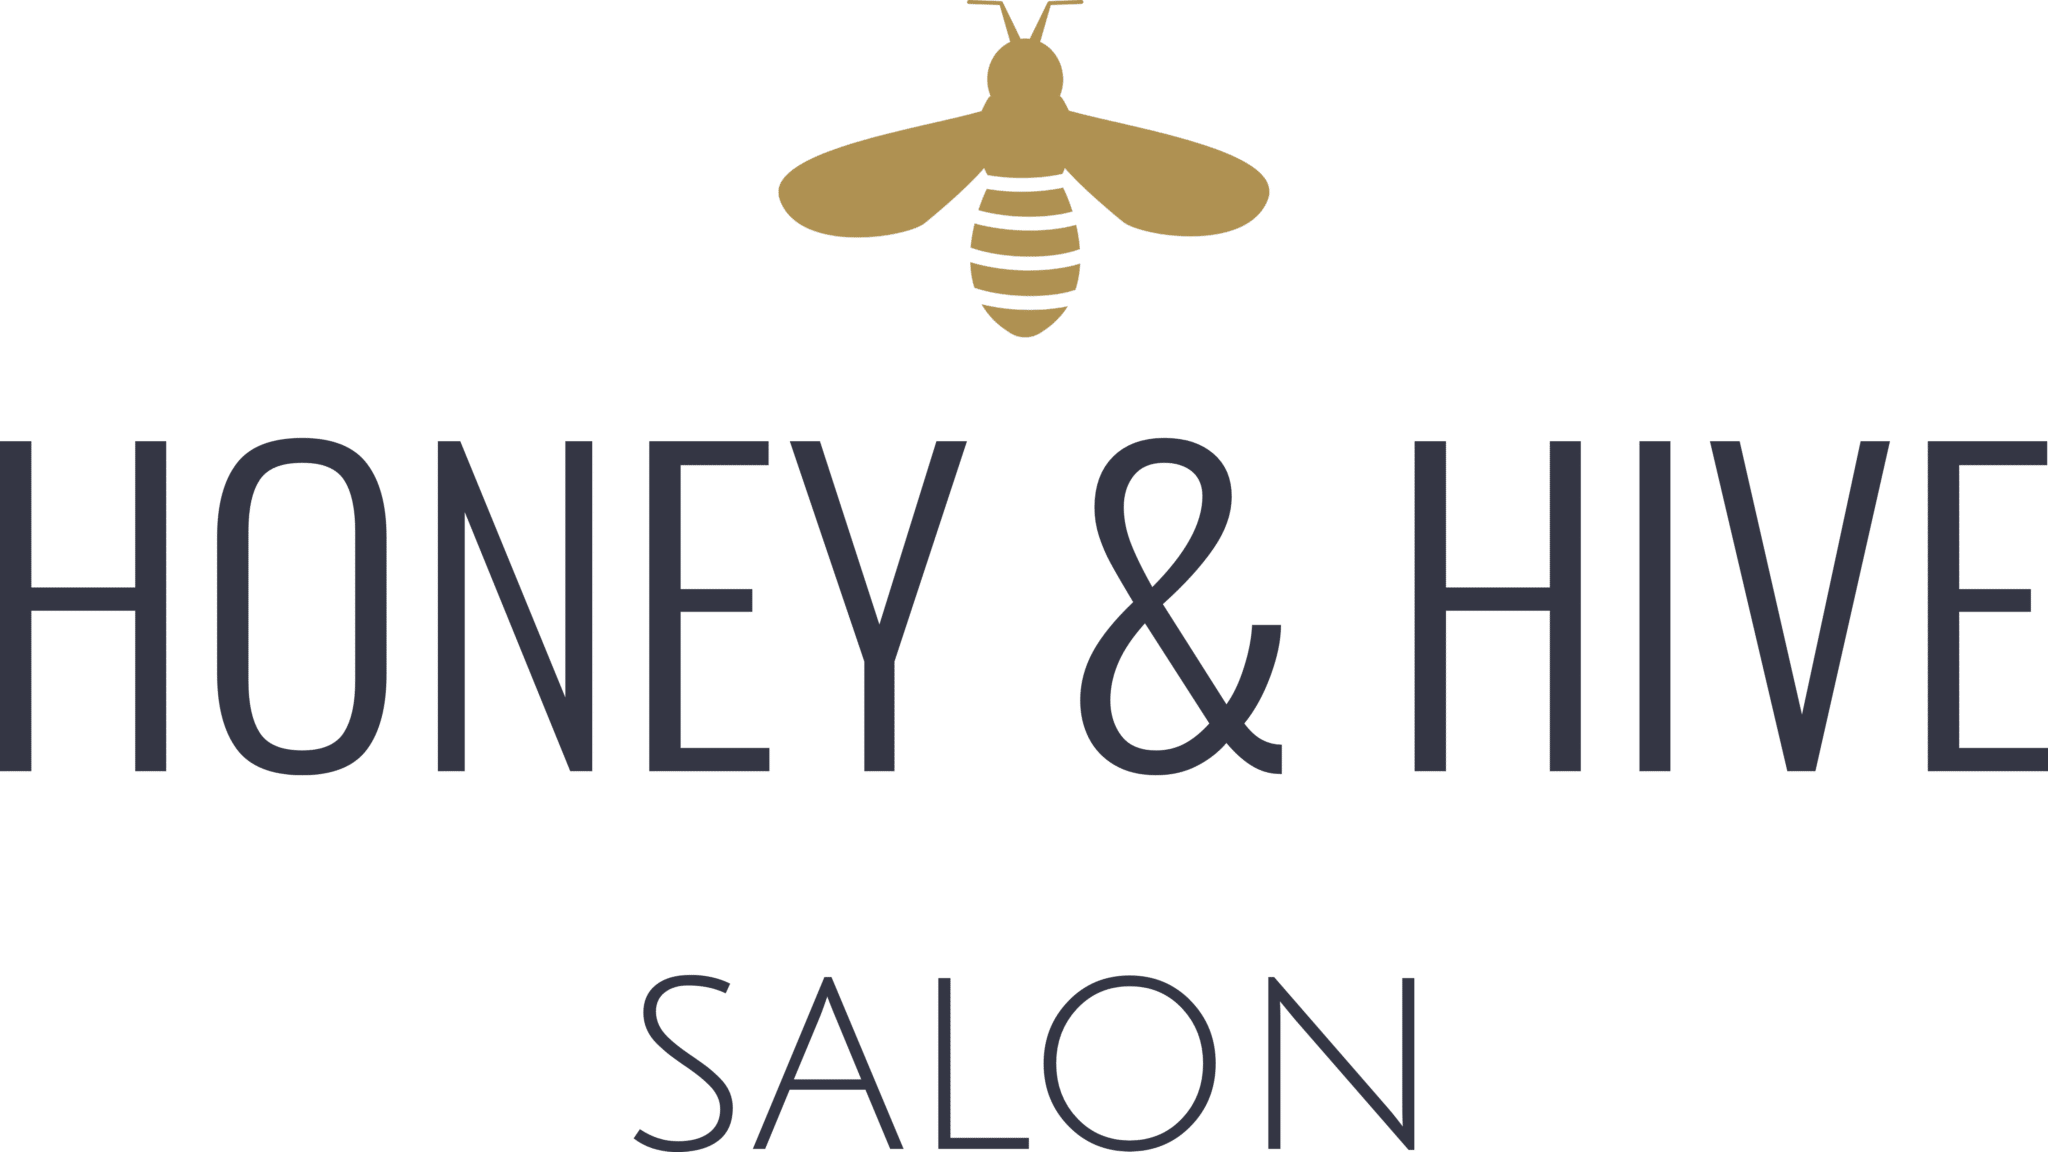 Honey & Hive